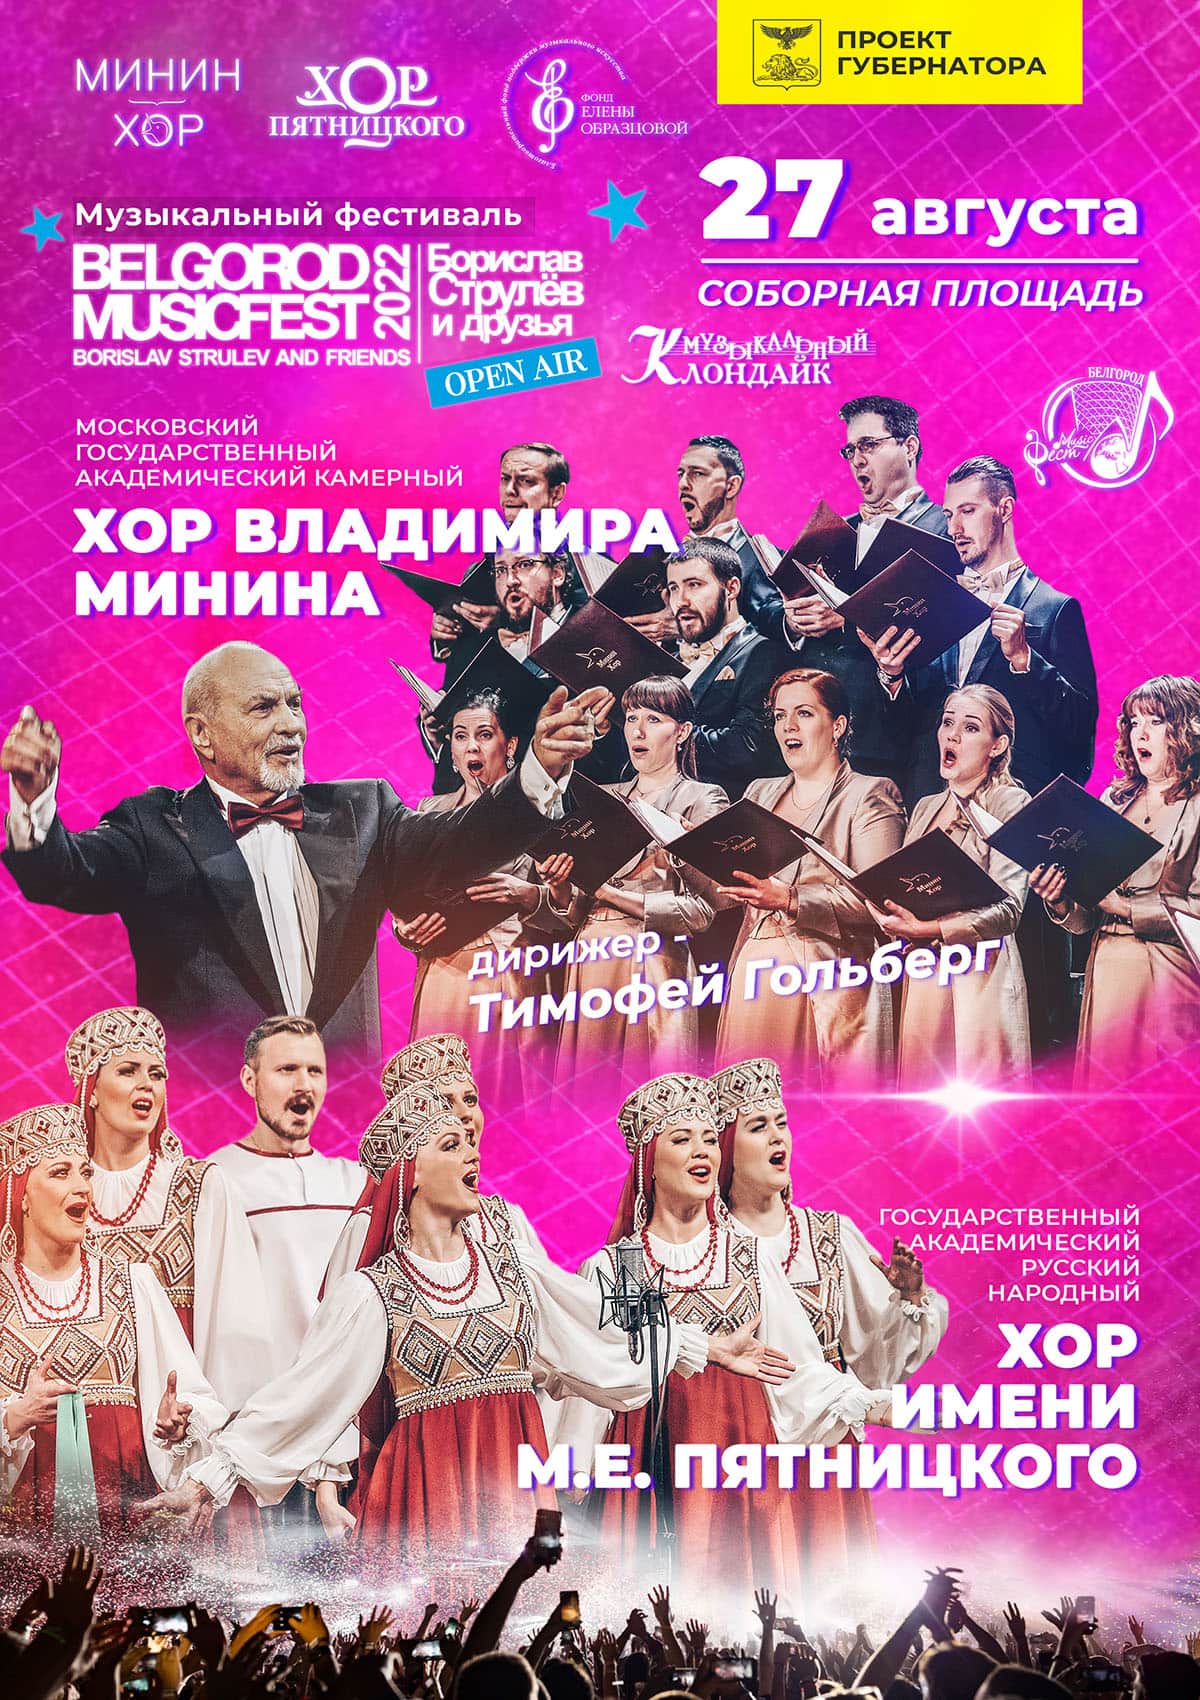 Минин-хор выступит на фестивале BelgorodMusicFest